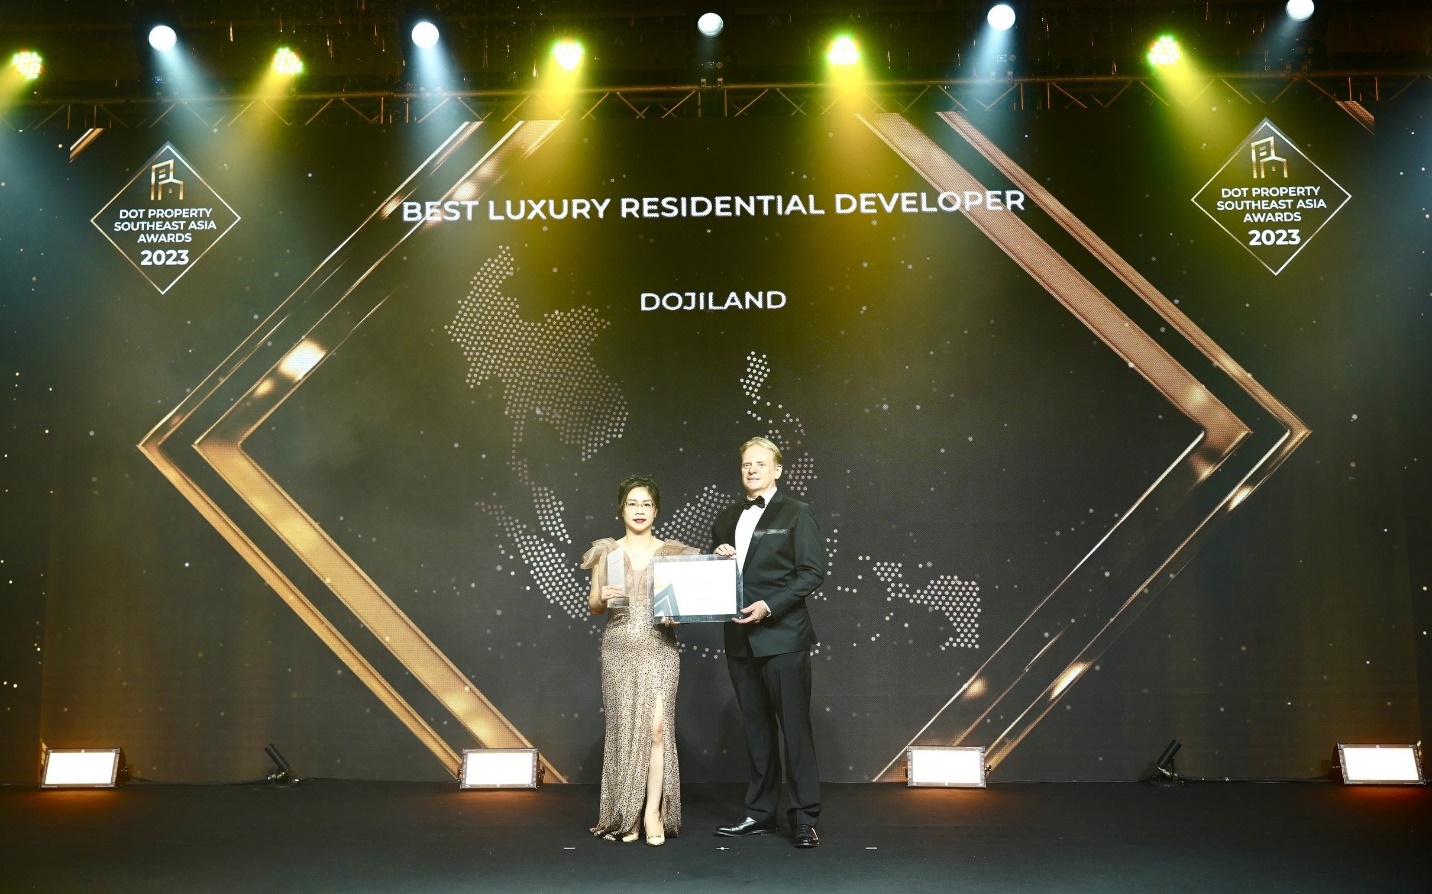 DOJILAND - Nhà phát triển BĐS hạng sang tốt nhất Đông Nam Á 2023 - Ảnh 3.